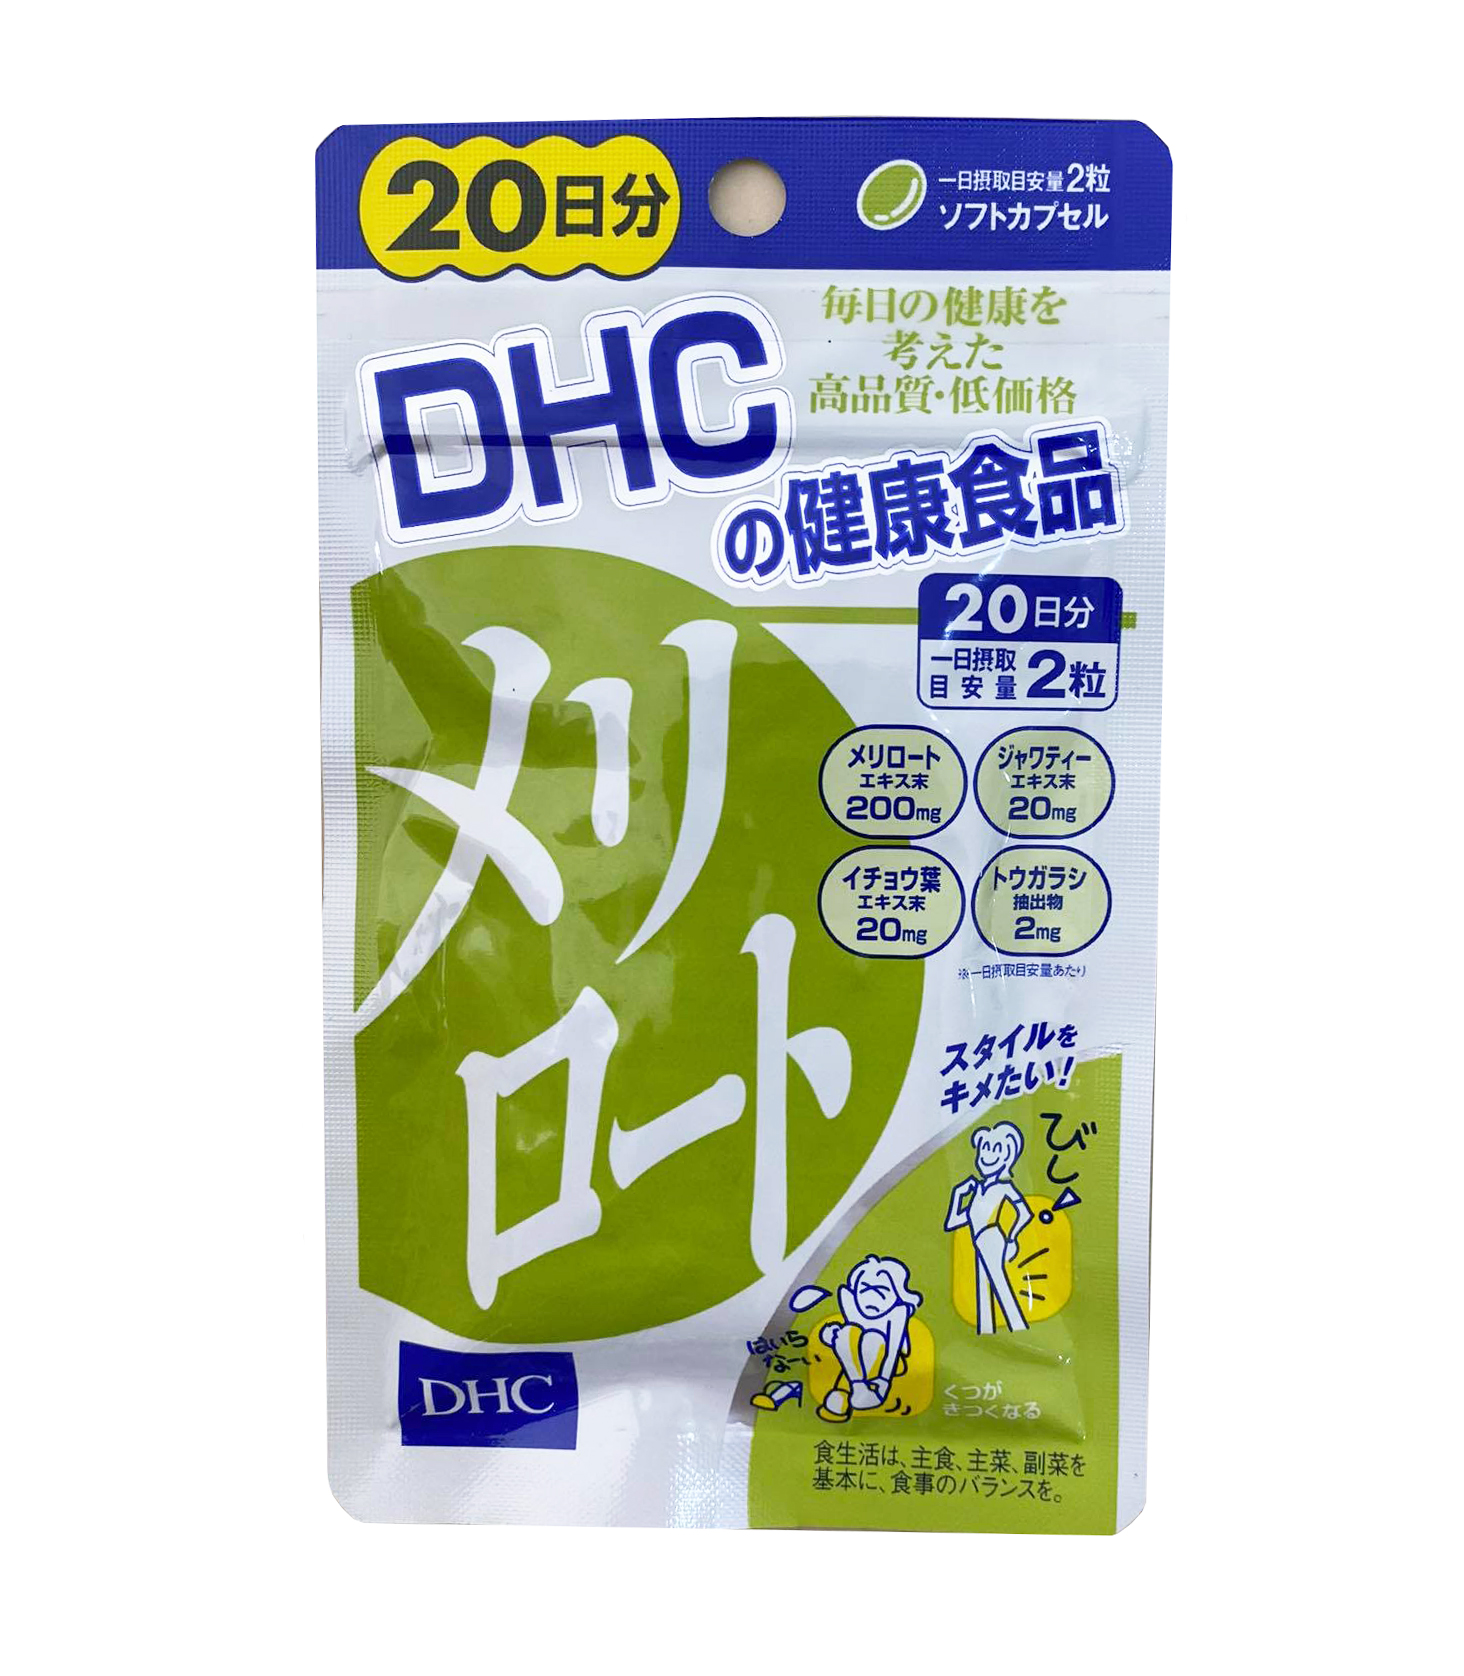 Viên uống hỗ trợ cải thiện mỡ đùi, bắp chân DHC Nhật Bản 40 viên